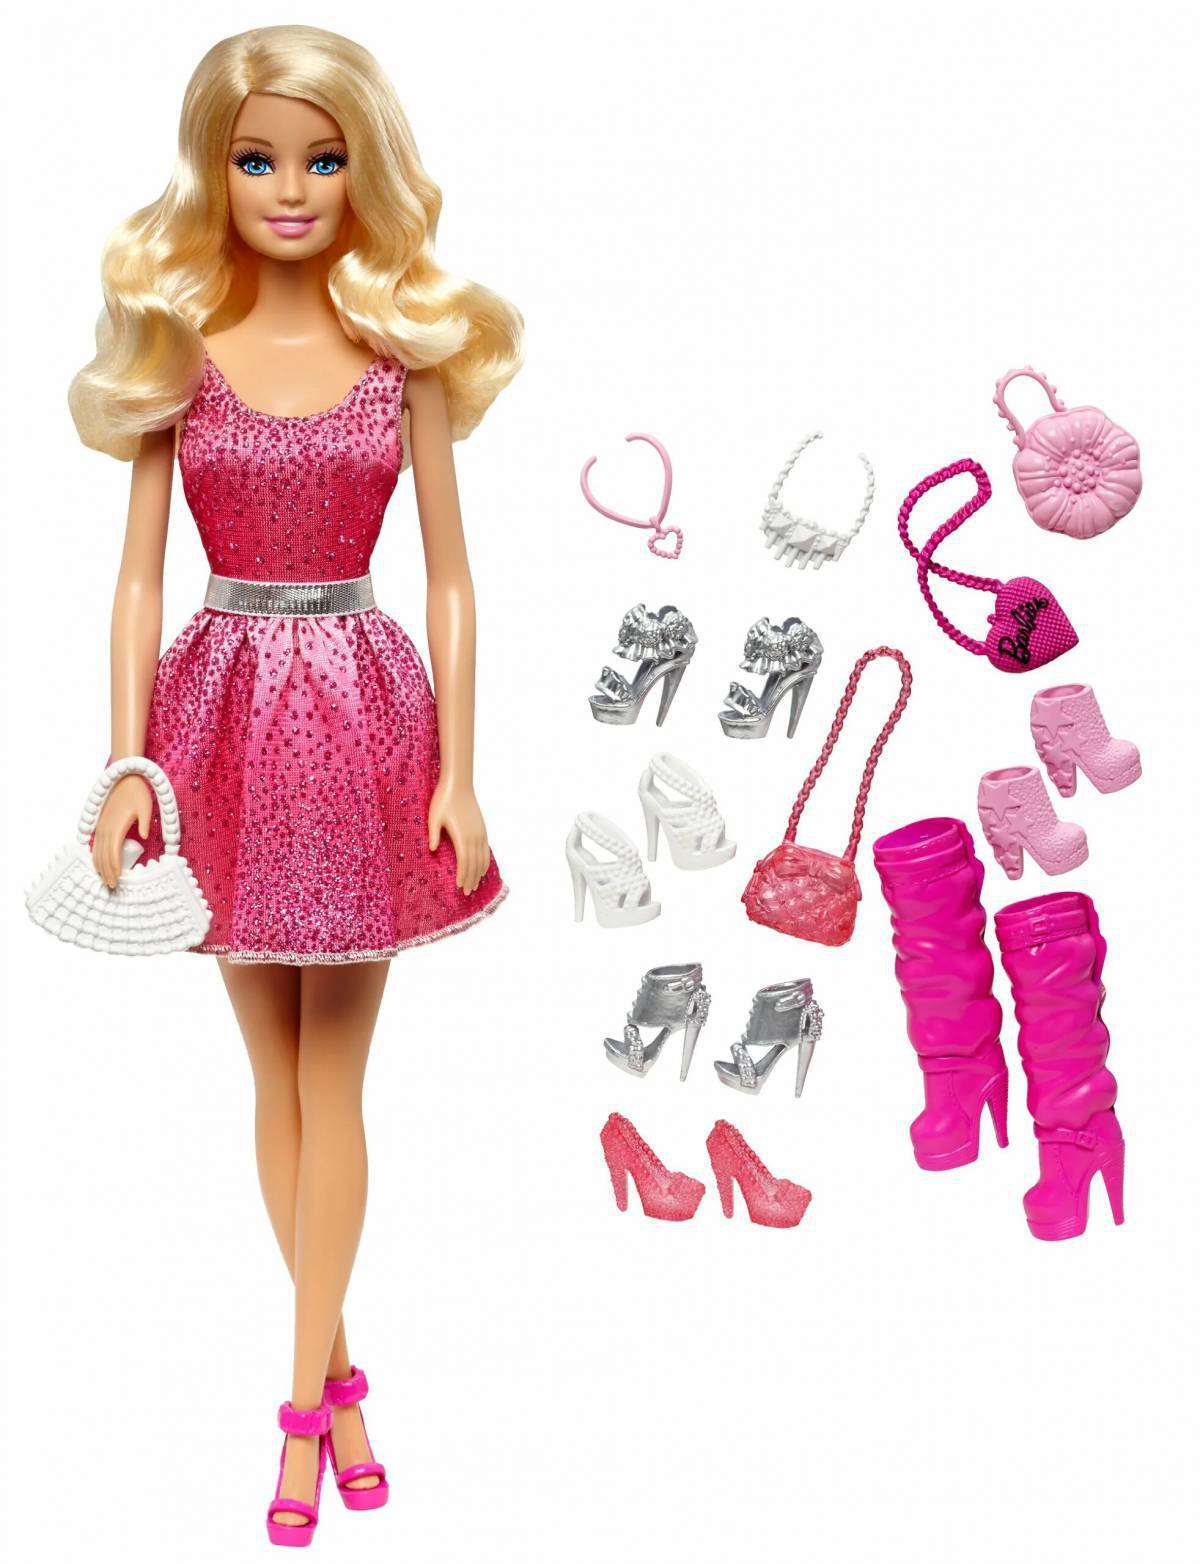 Кукла Маттель Барби. Одежда для Барби Маттел. Обувь для кукол Барби Маттел. Куколка Барби для куколки Барби. Игры для девочек куклы барби